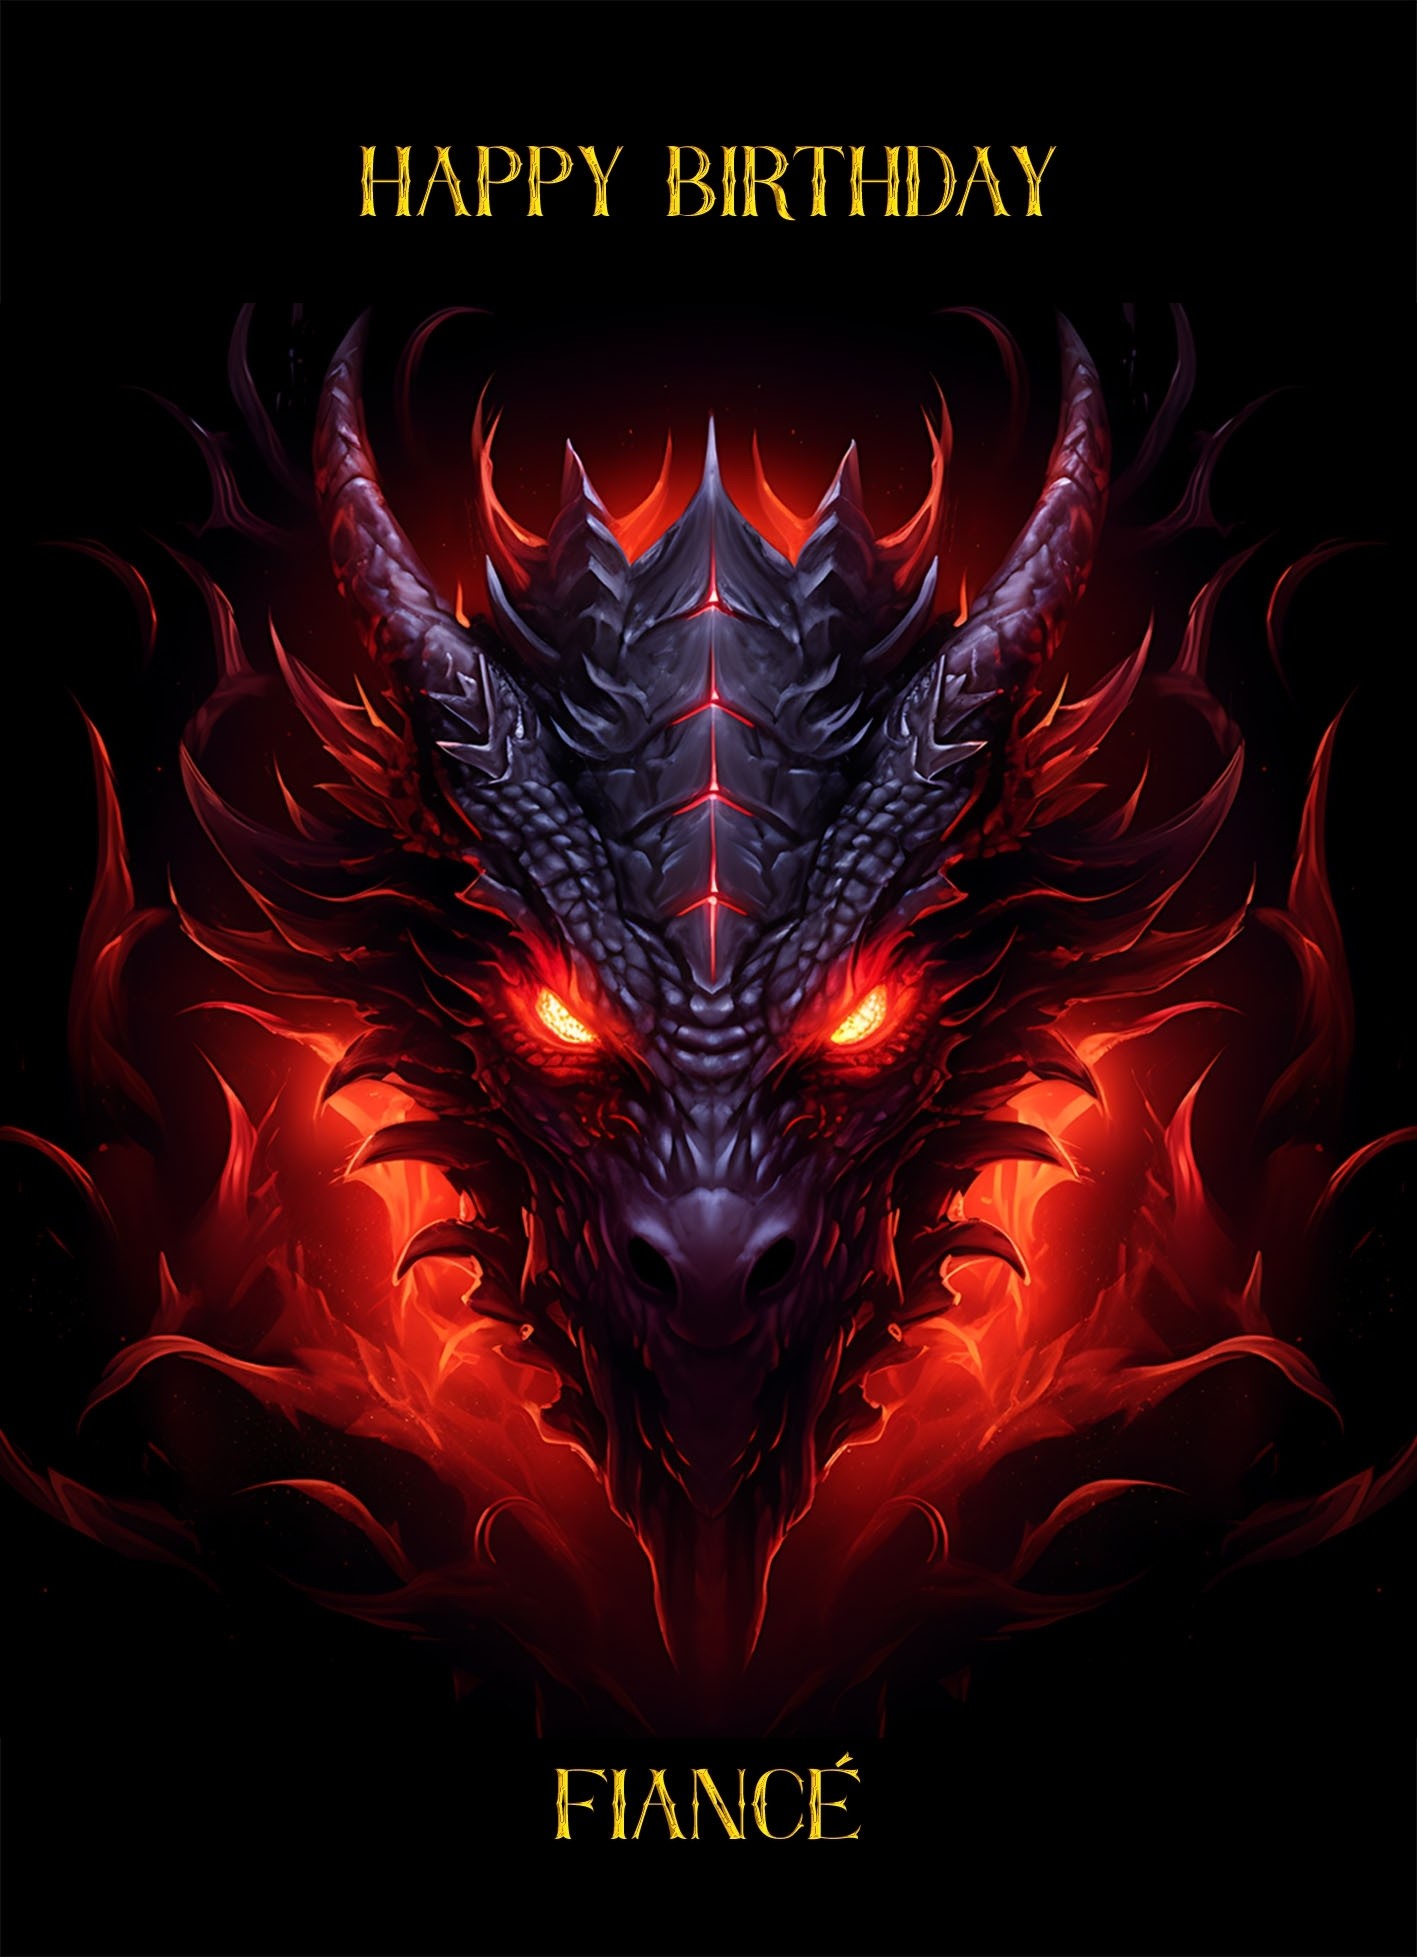 Gothic Fantasy Dragon Birthday Card For Fiance (Design 1)